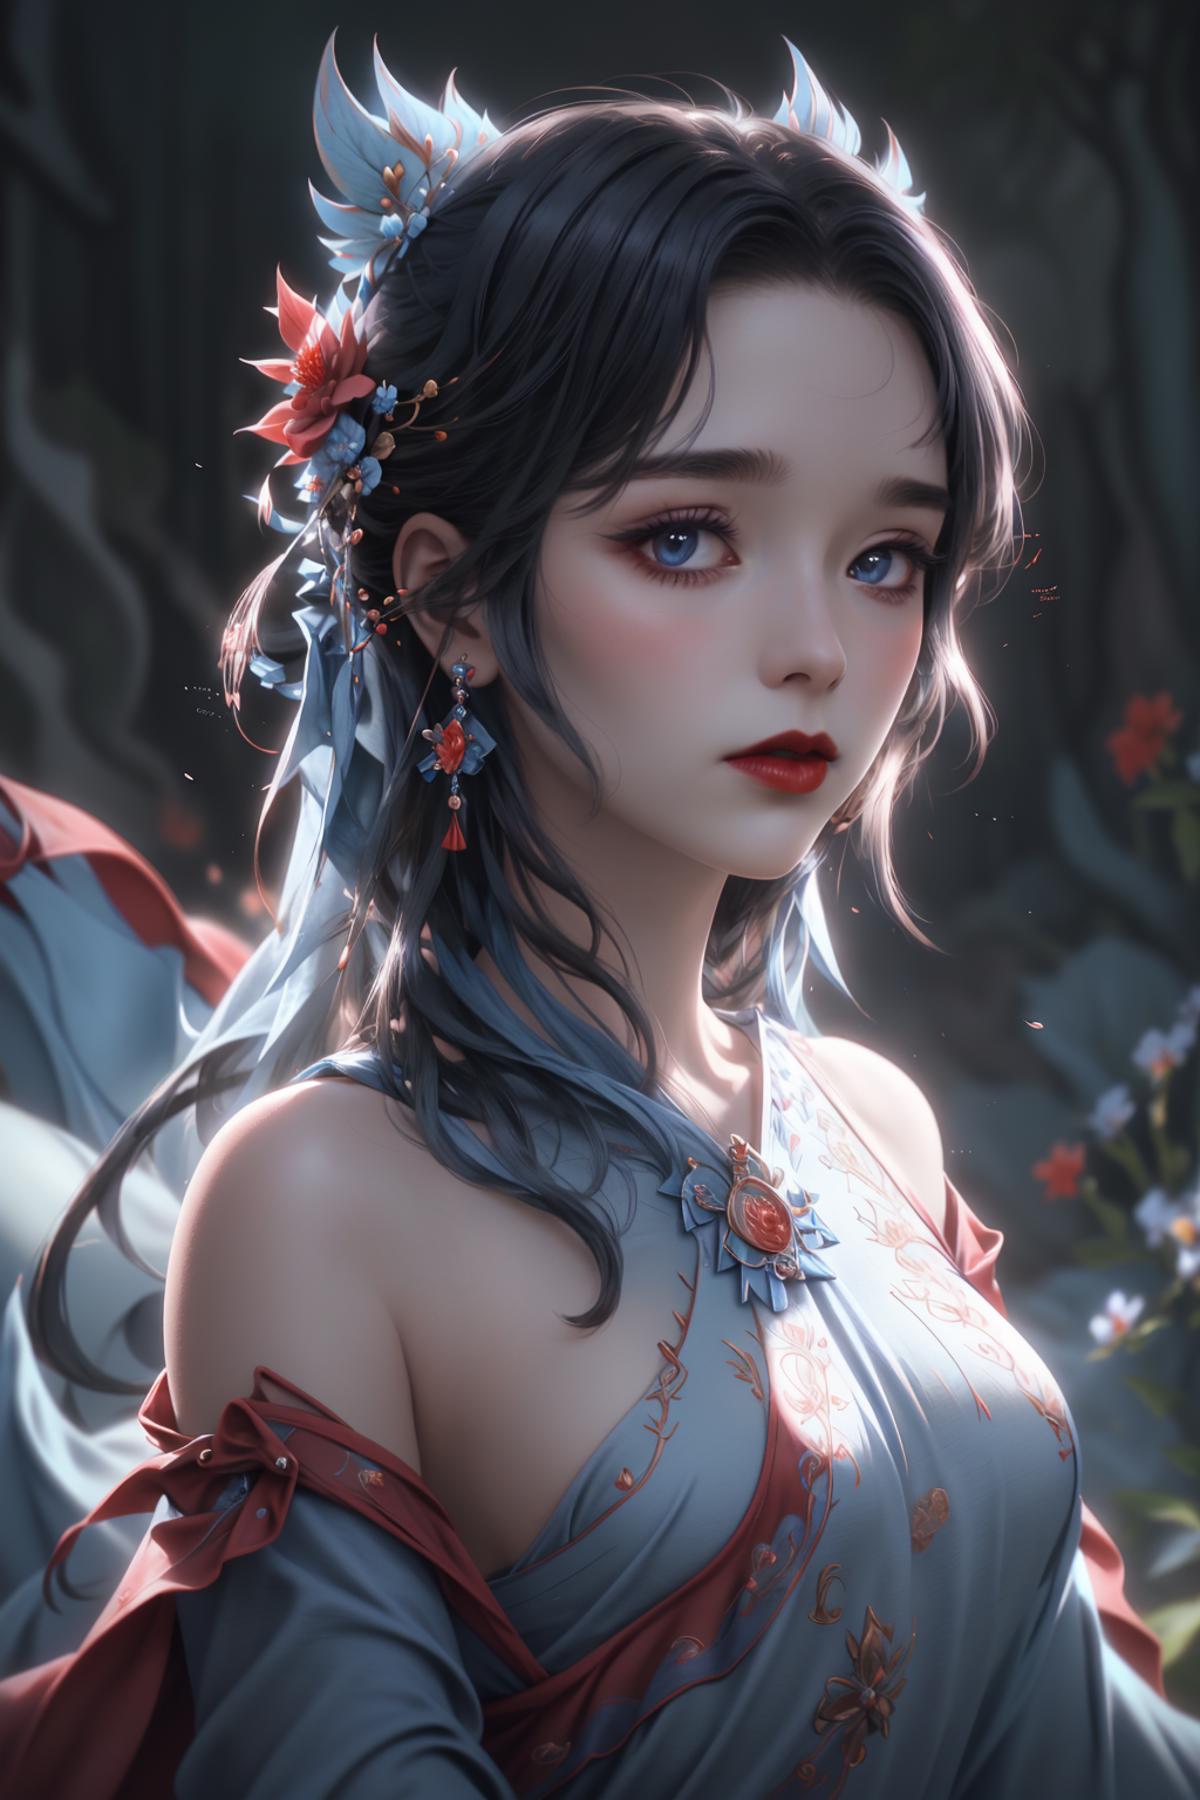 Goddess image by YuntaoHu